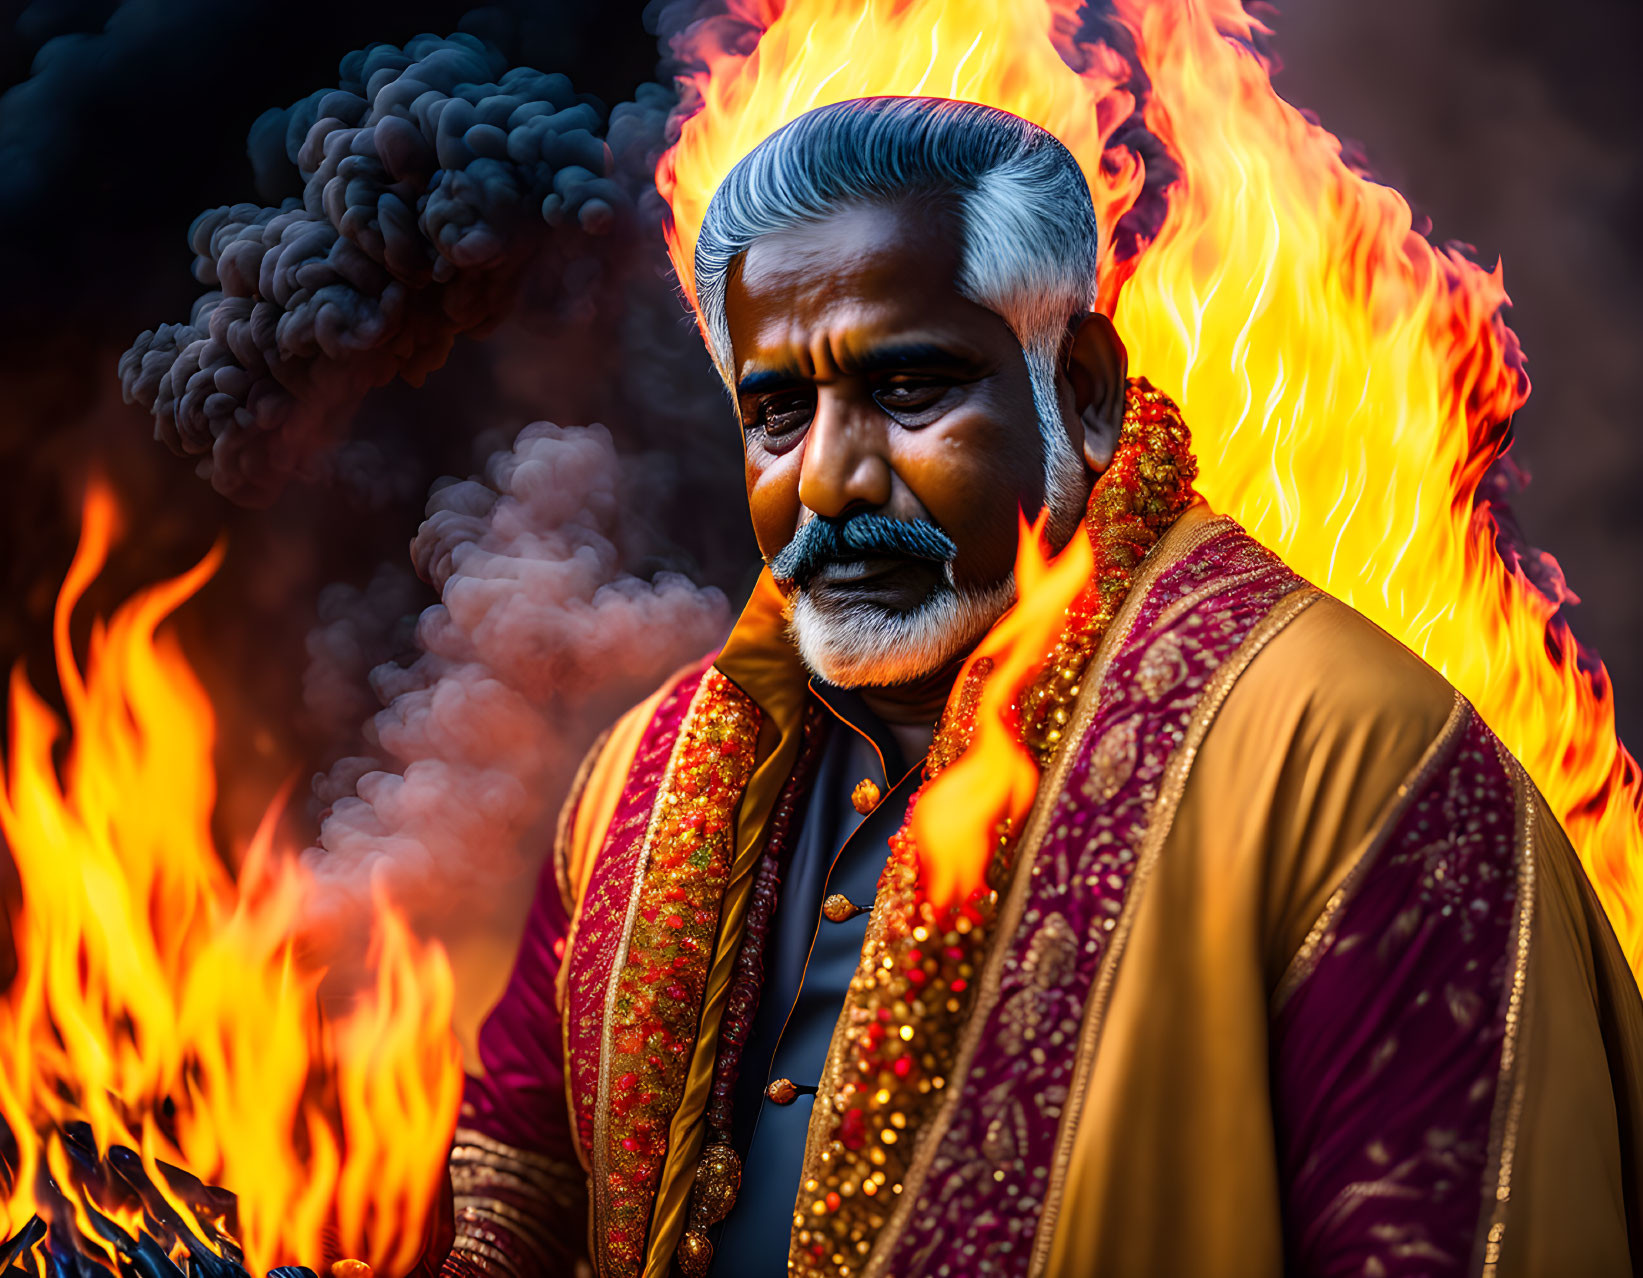 Elderly man in traditional attire amid fiery backdrop